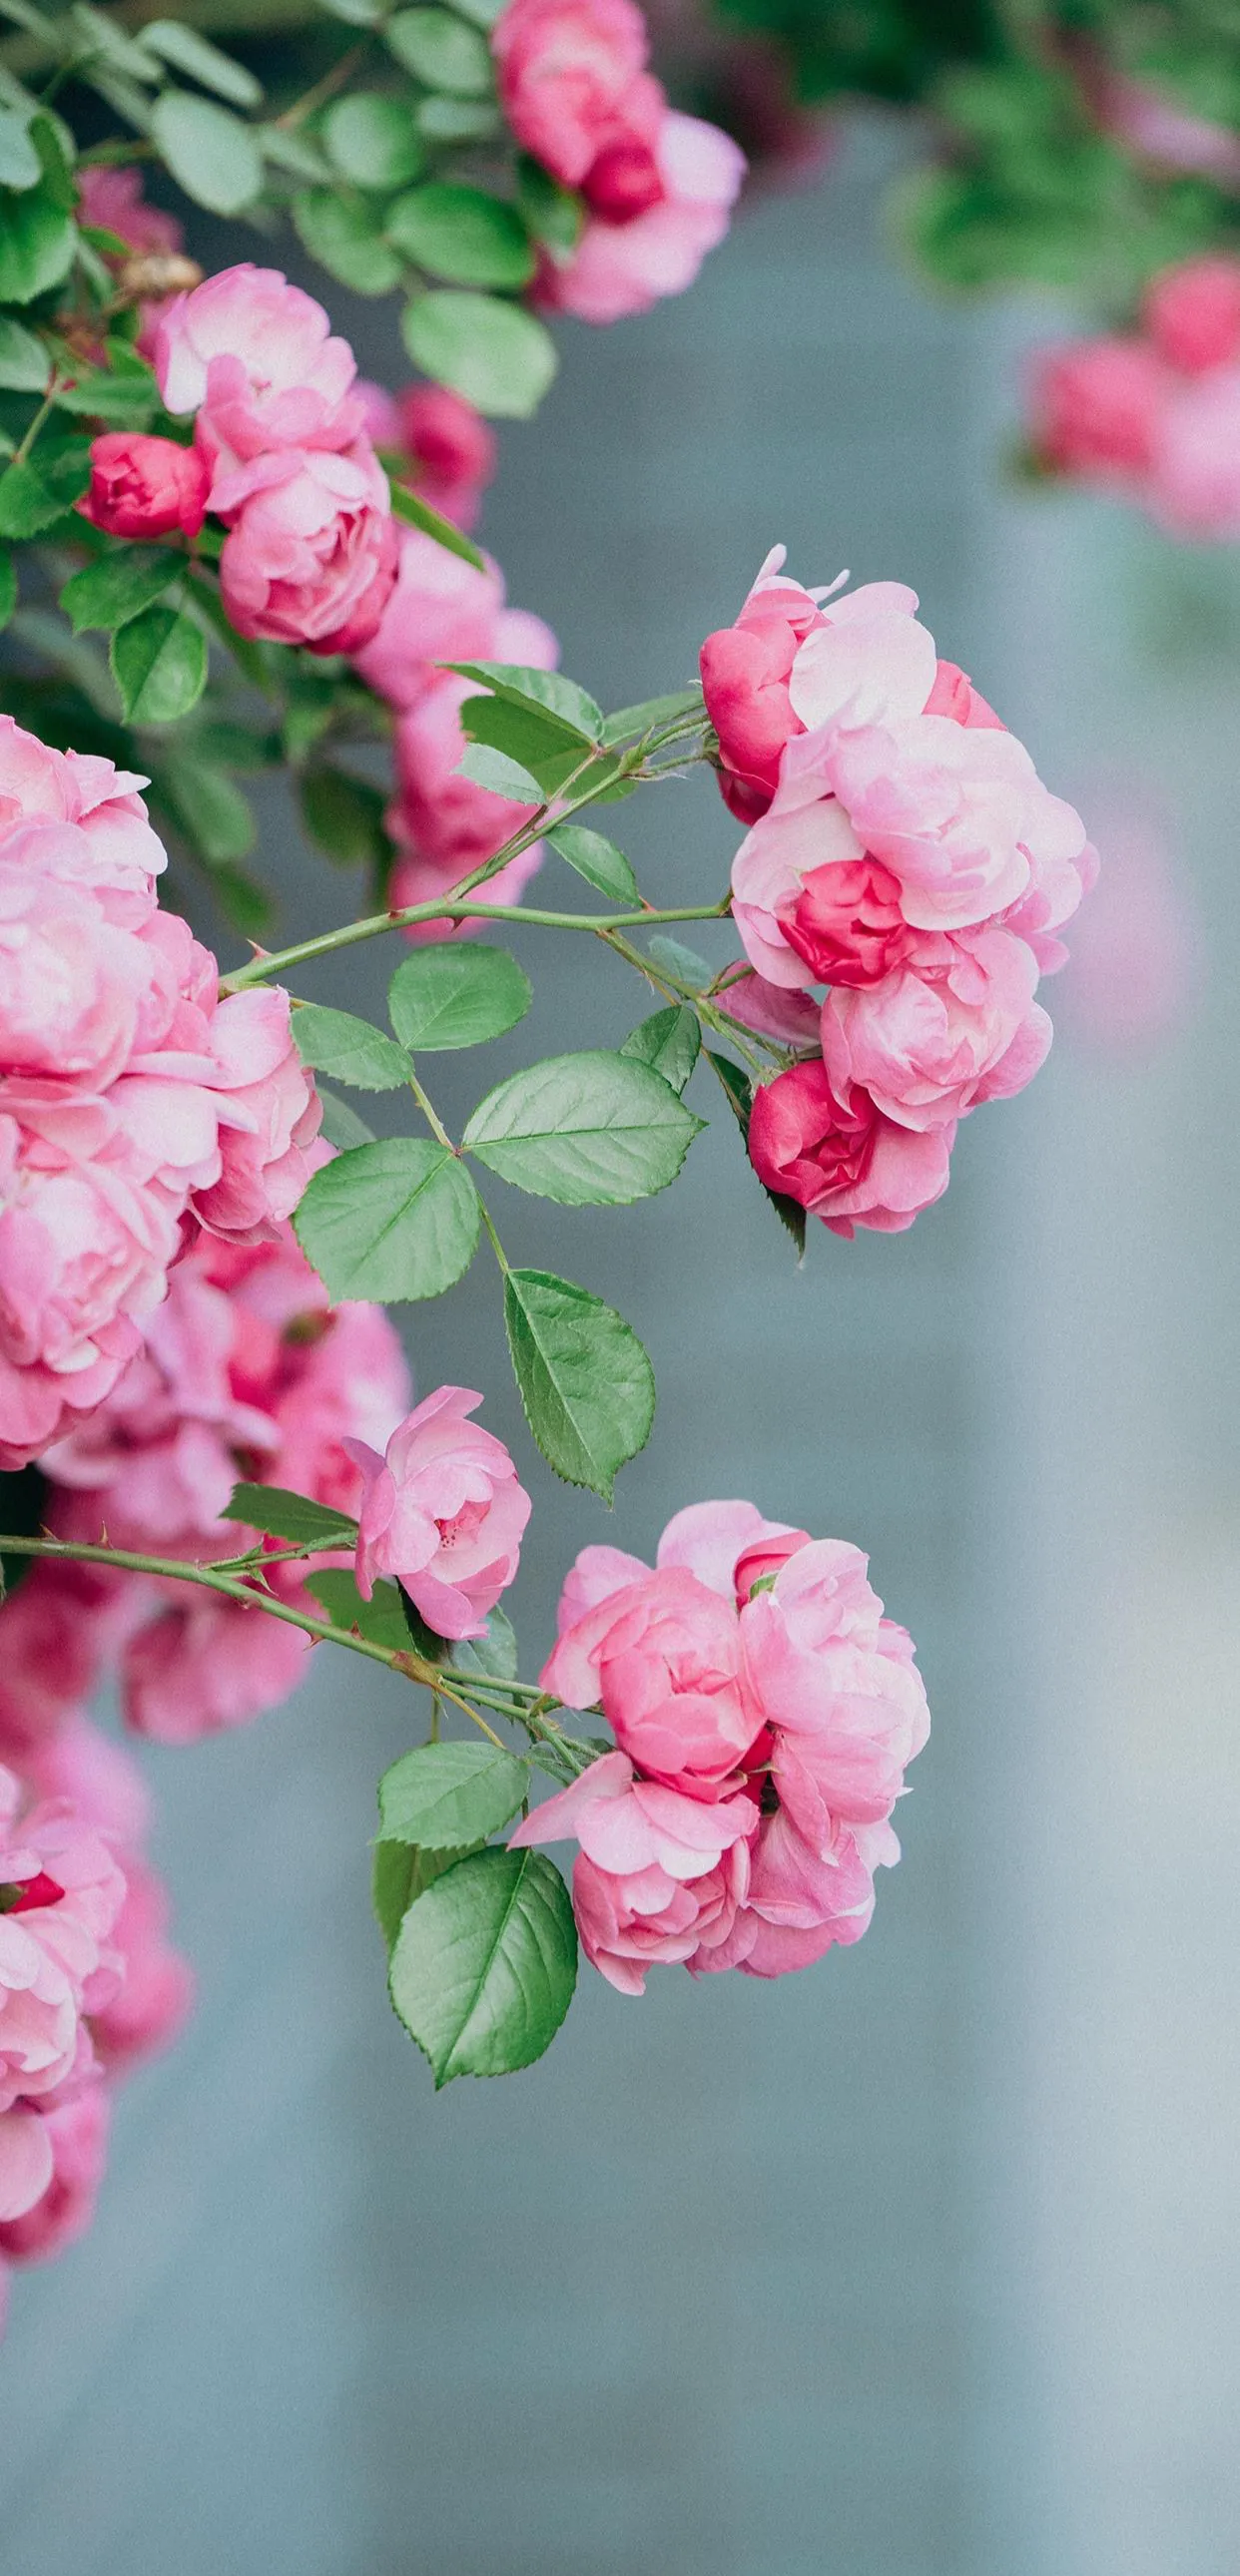 这个季节 蔷薇盛开 可以分享一下你拍摄的蔷薇花美图么 蔷薇是一种非常美丽的花卉 花语寓意跟爱情有关 蔷薇的花语是爱情和